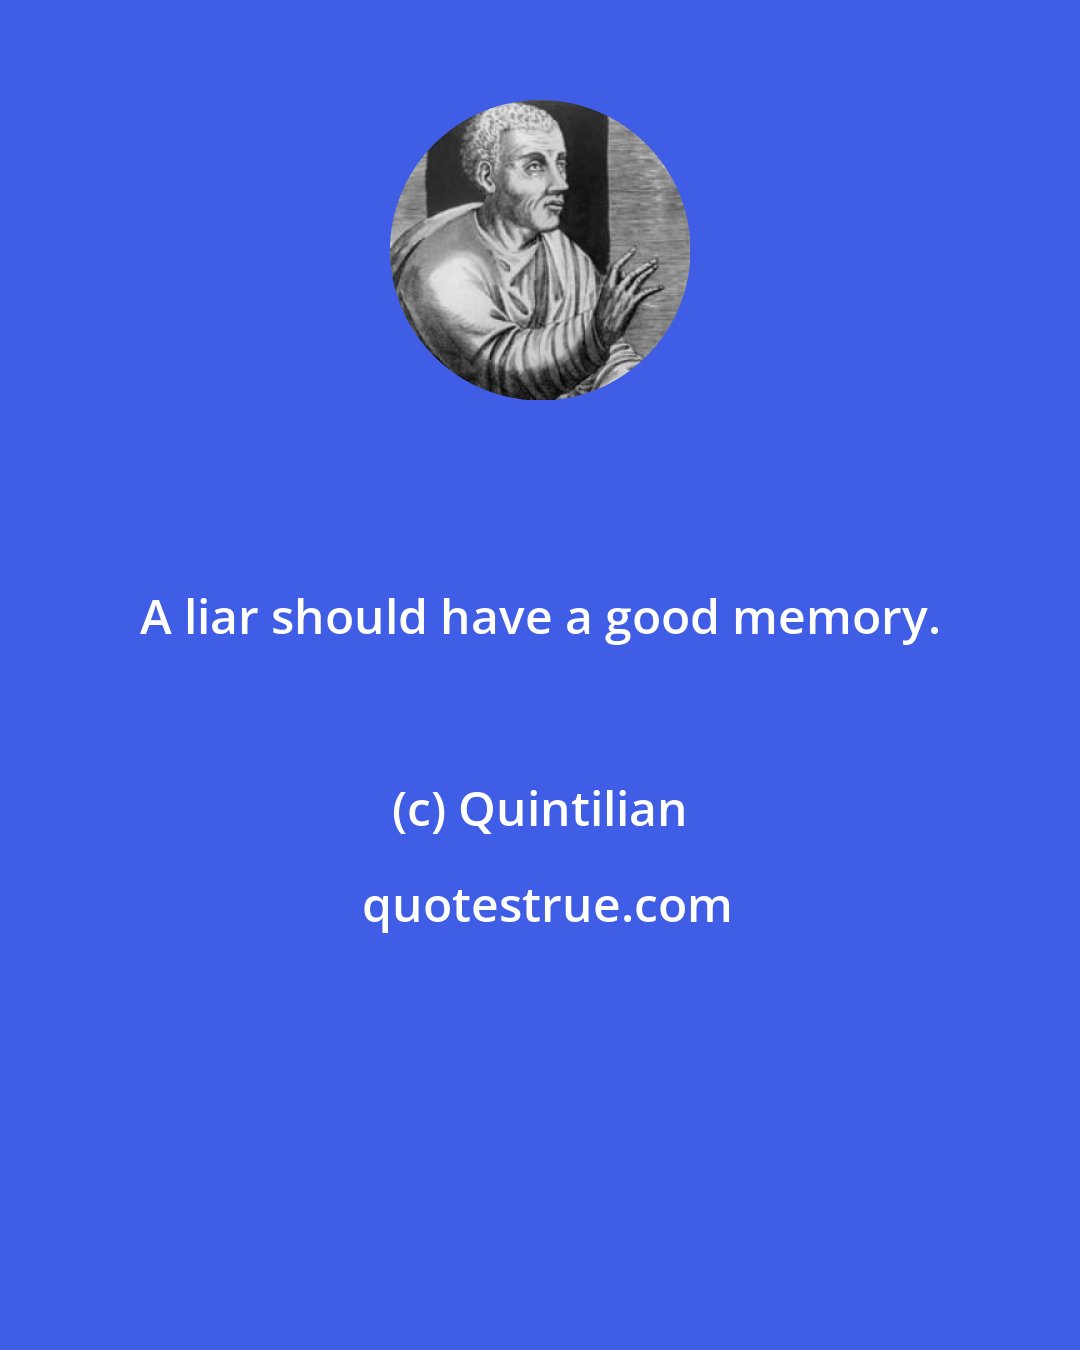 Quintilian: A liar should have a good memory.